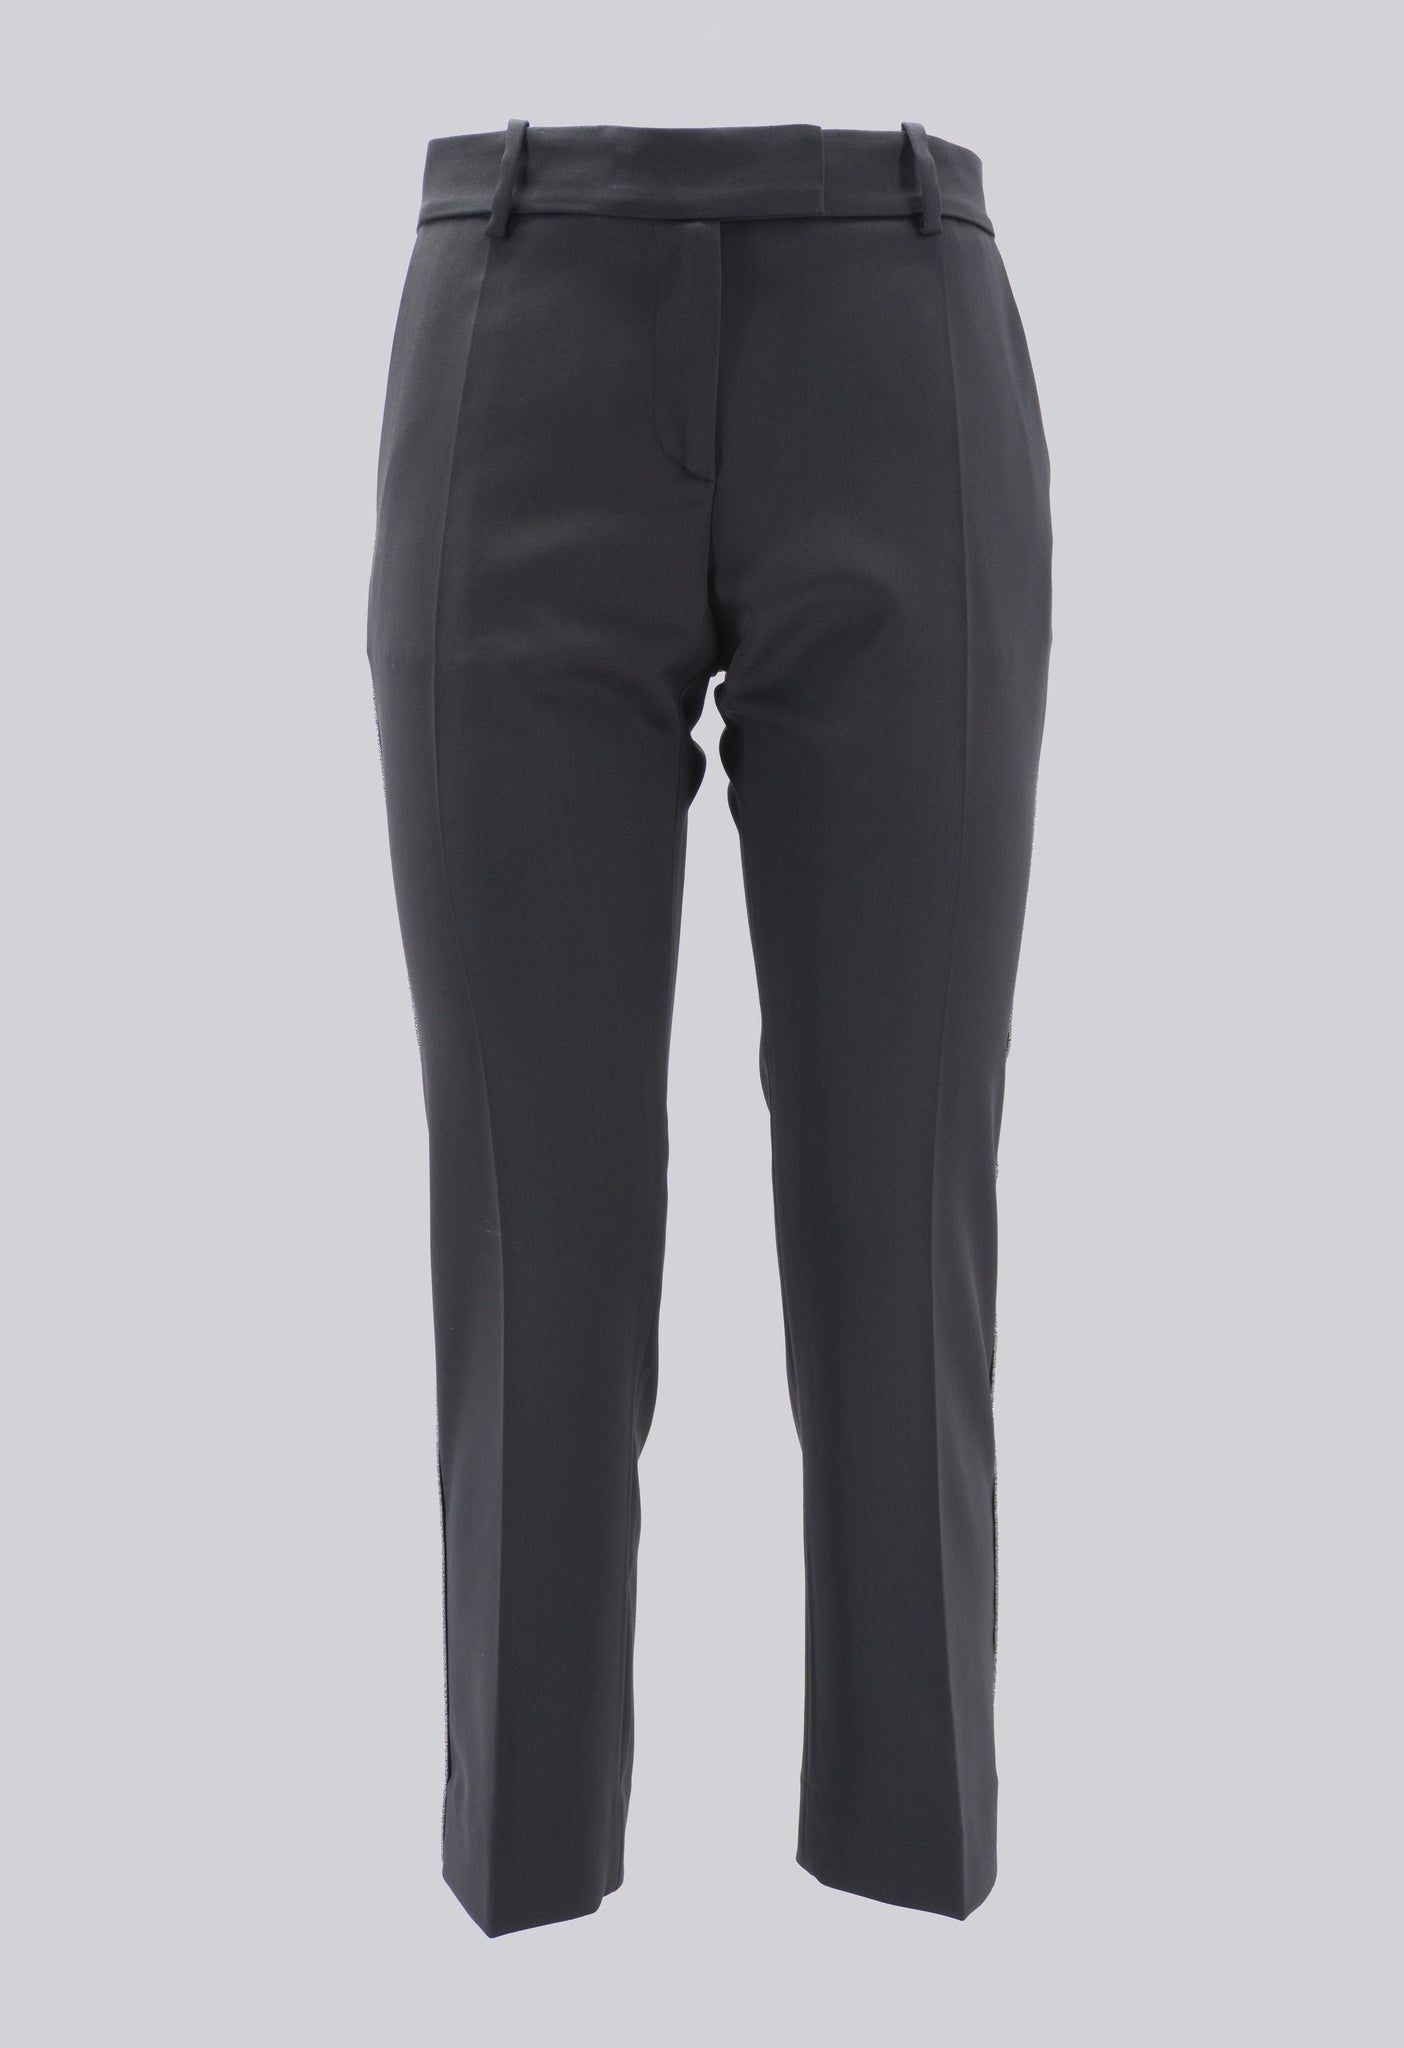 Pantalone Chino Classico / Nero - Ideal Moda